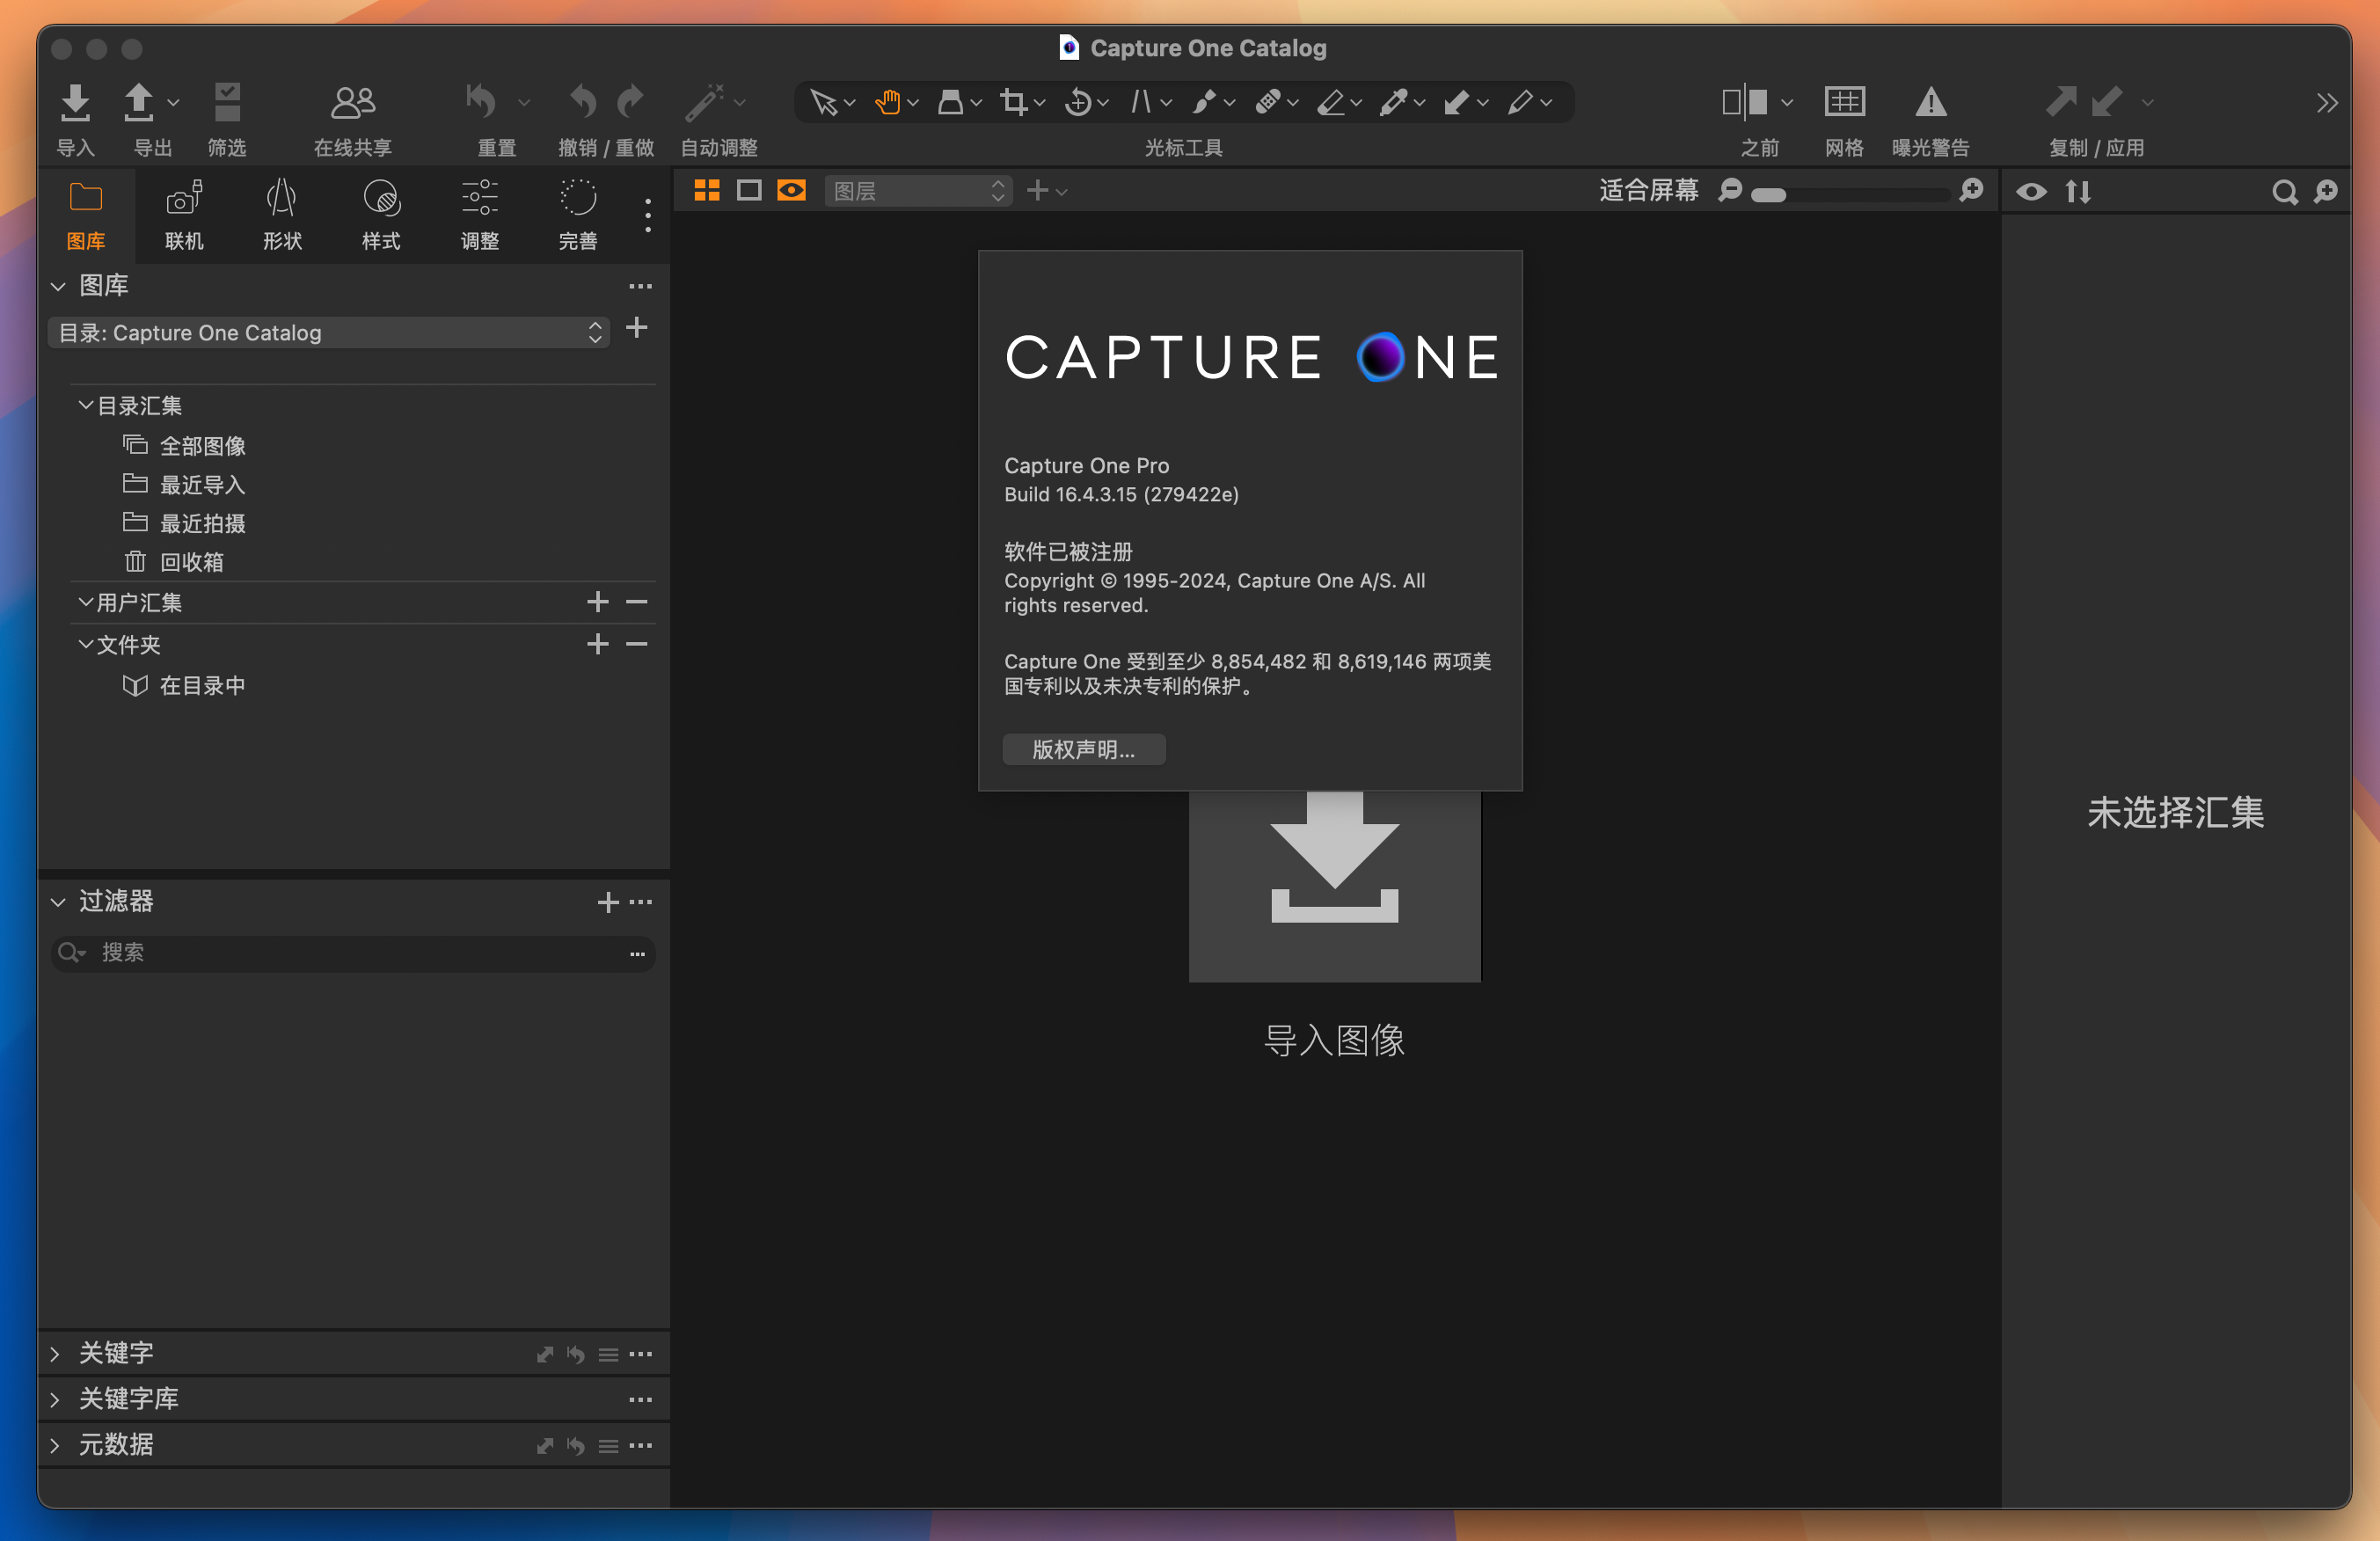 Capture One 23 Pro for Mac v16.4.3.15 RAW转换和图像编辑工具 免激活下载-1